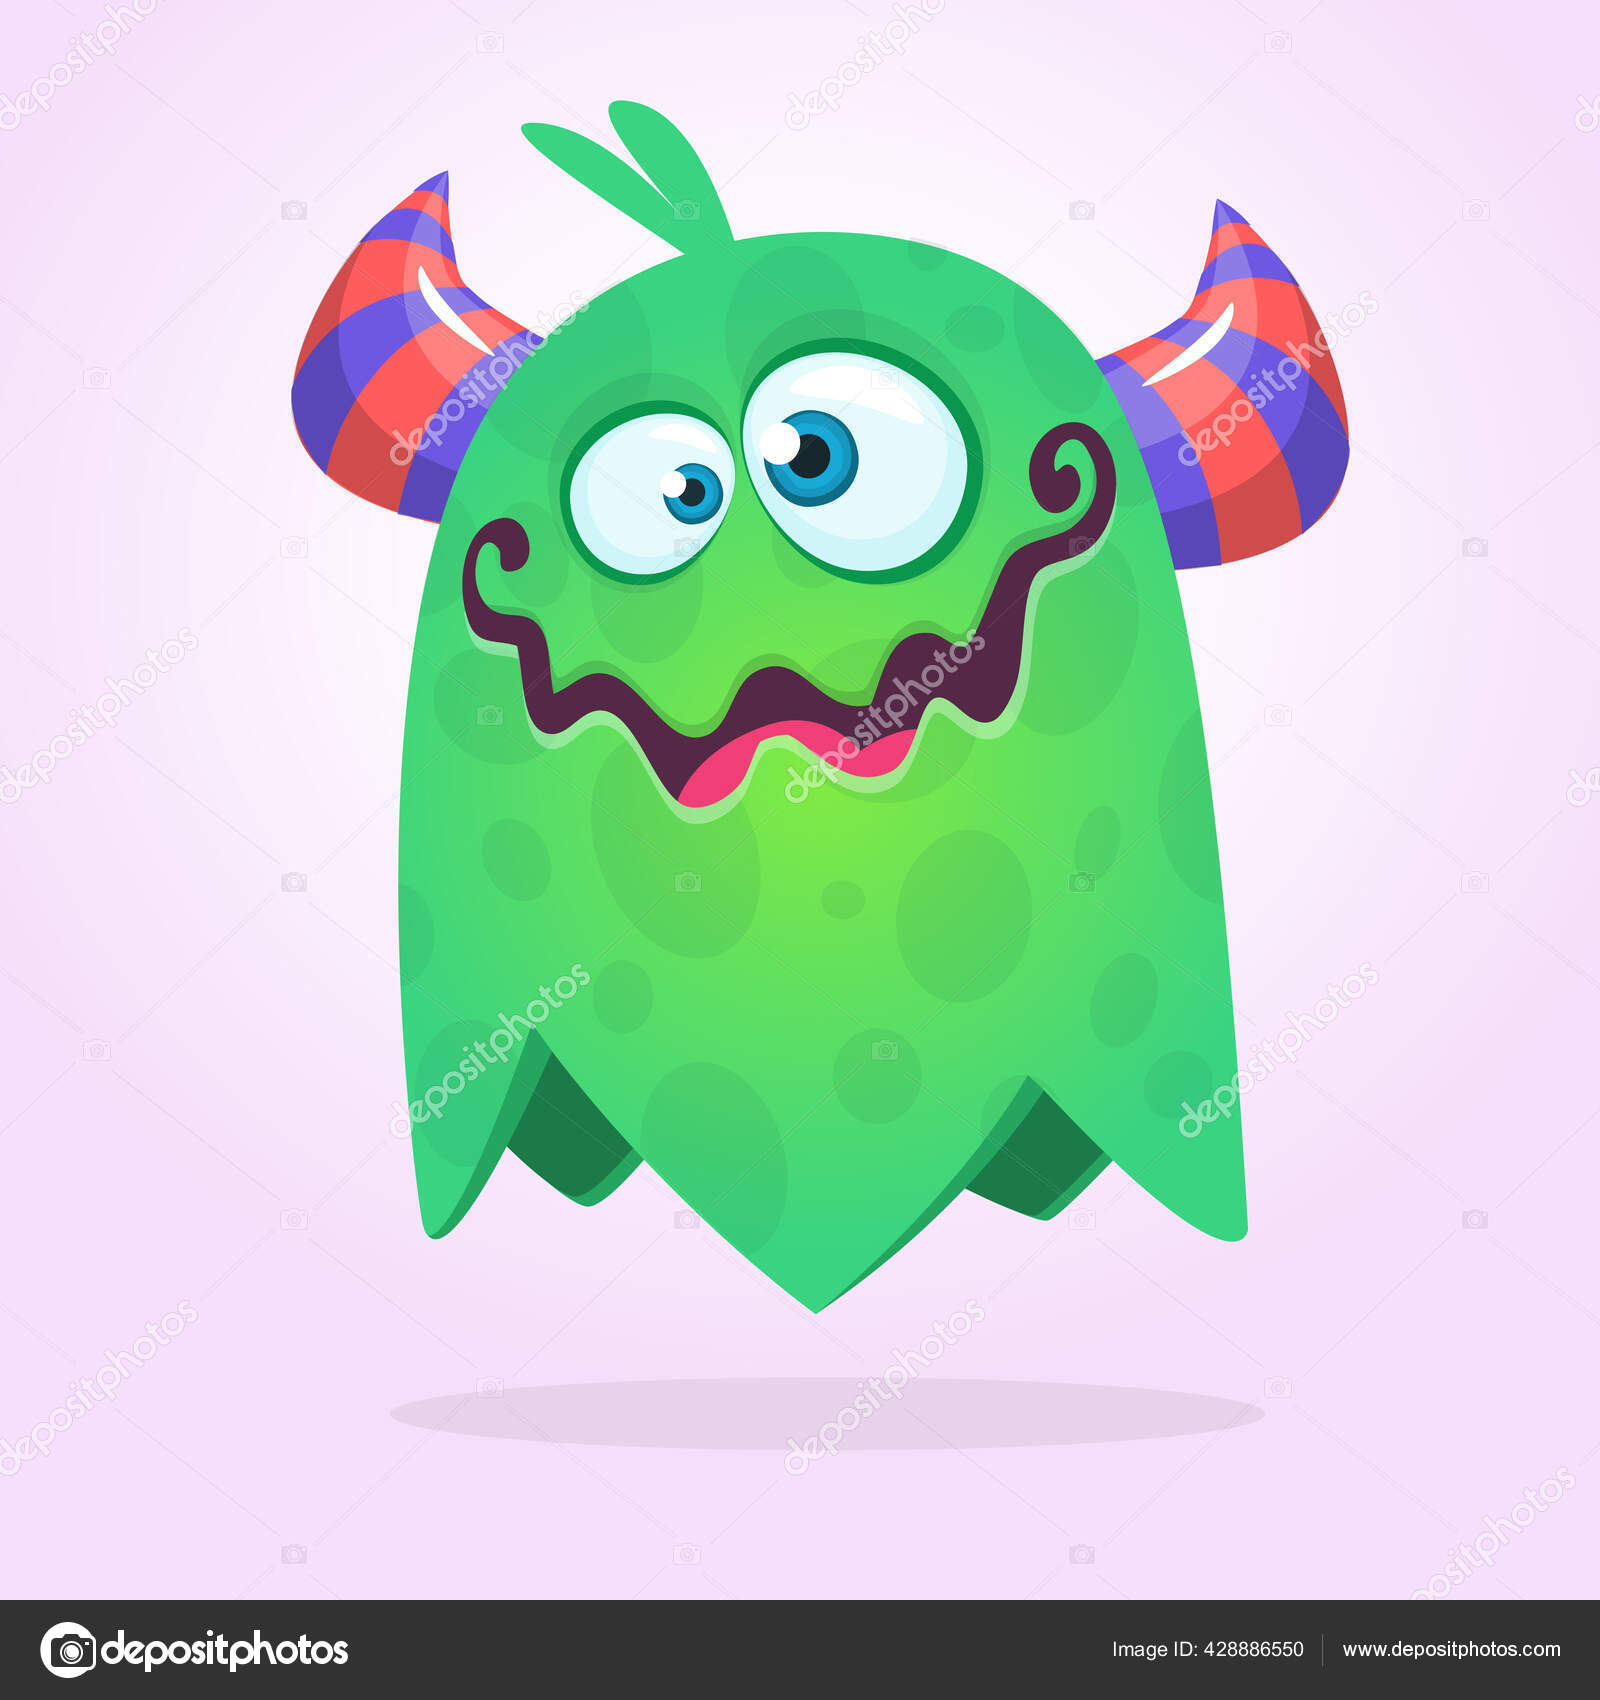 Personagem de desenho animado de monstro alienígena roxo com boca